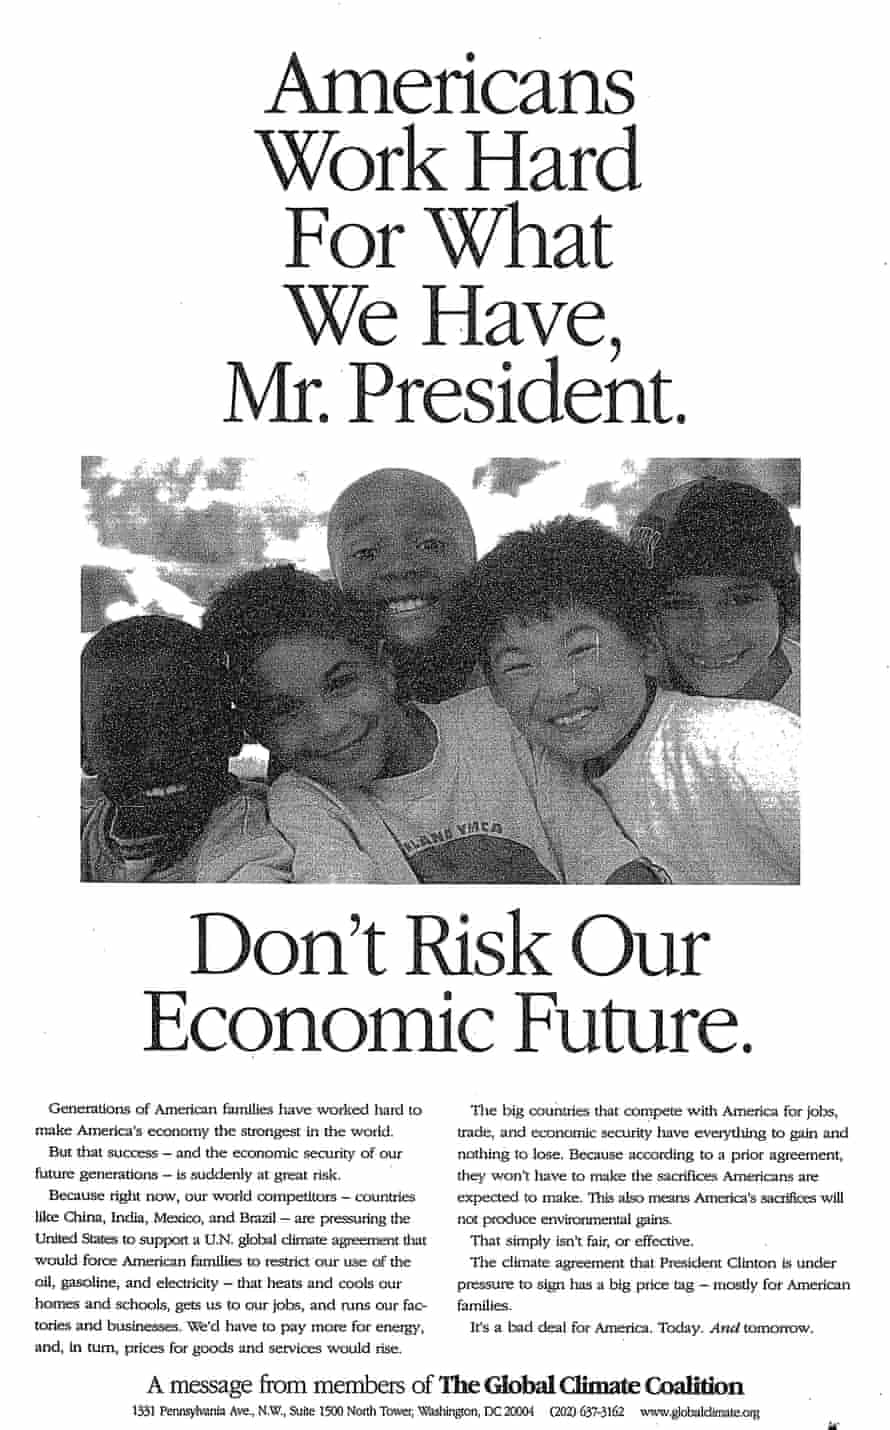 Światowy Sojusz Klimatyczny, Deklaracja z 1997 r.: "Amerykanie ciężko pracują na to, co mamy, panie prezydencie.  Nie ryzykuj naszej ekonomicznej przyszłości."